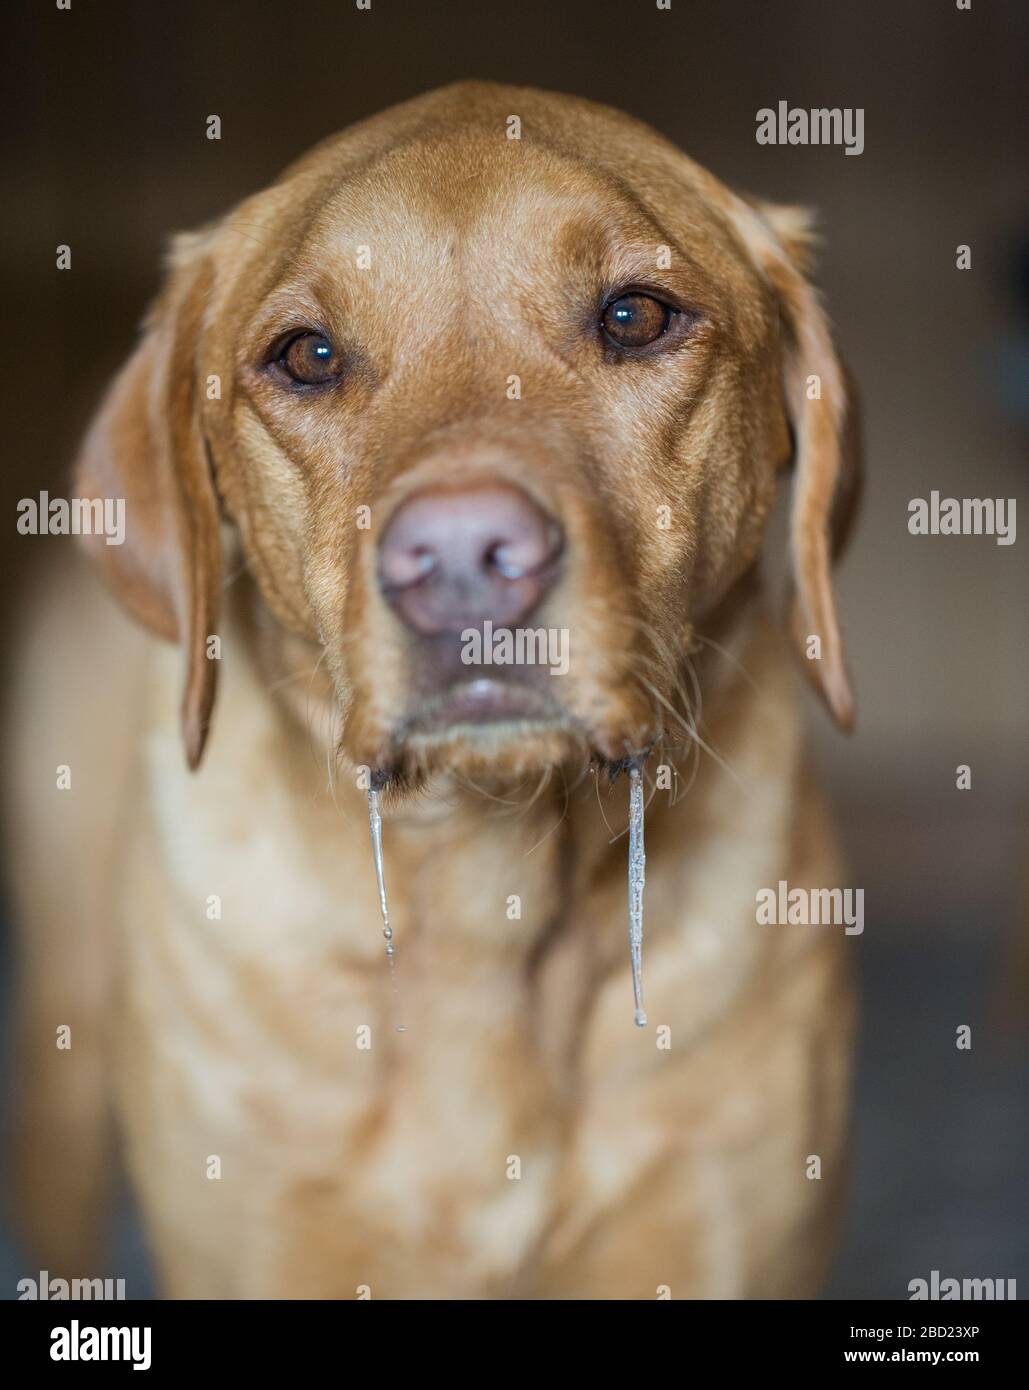 Ein Tierlabrador Retriever Hundeporträt mit Drool und Speichel, die aus dem Mund dribbeln und während des Wartens auf Essen abtropfen Stockfoto